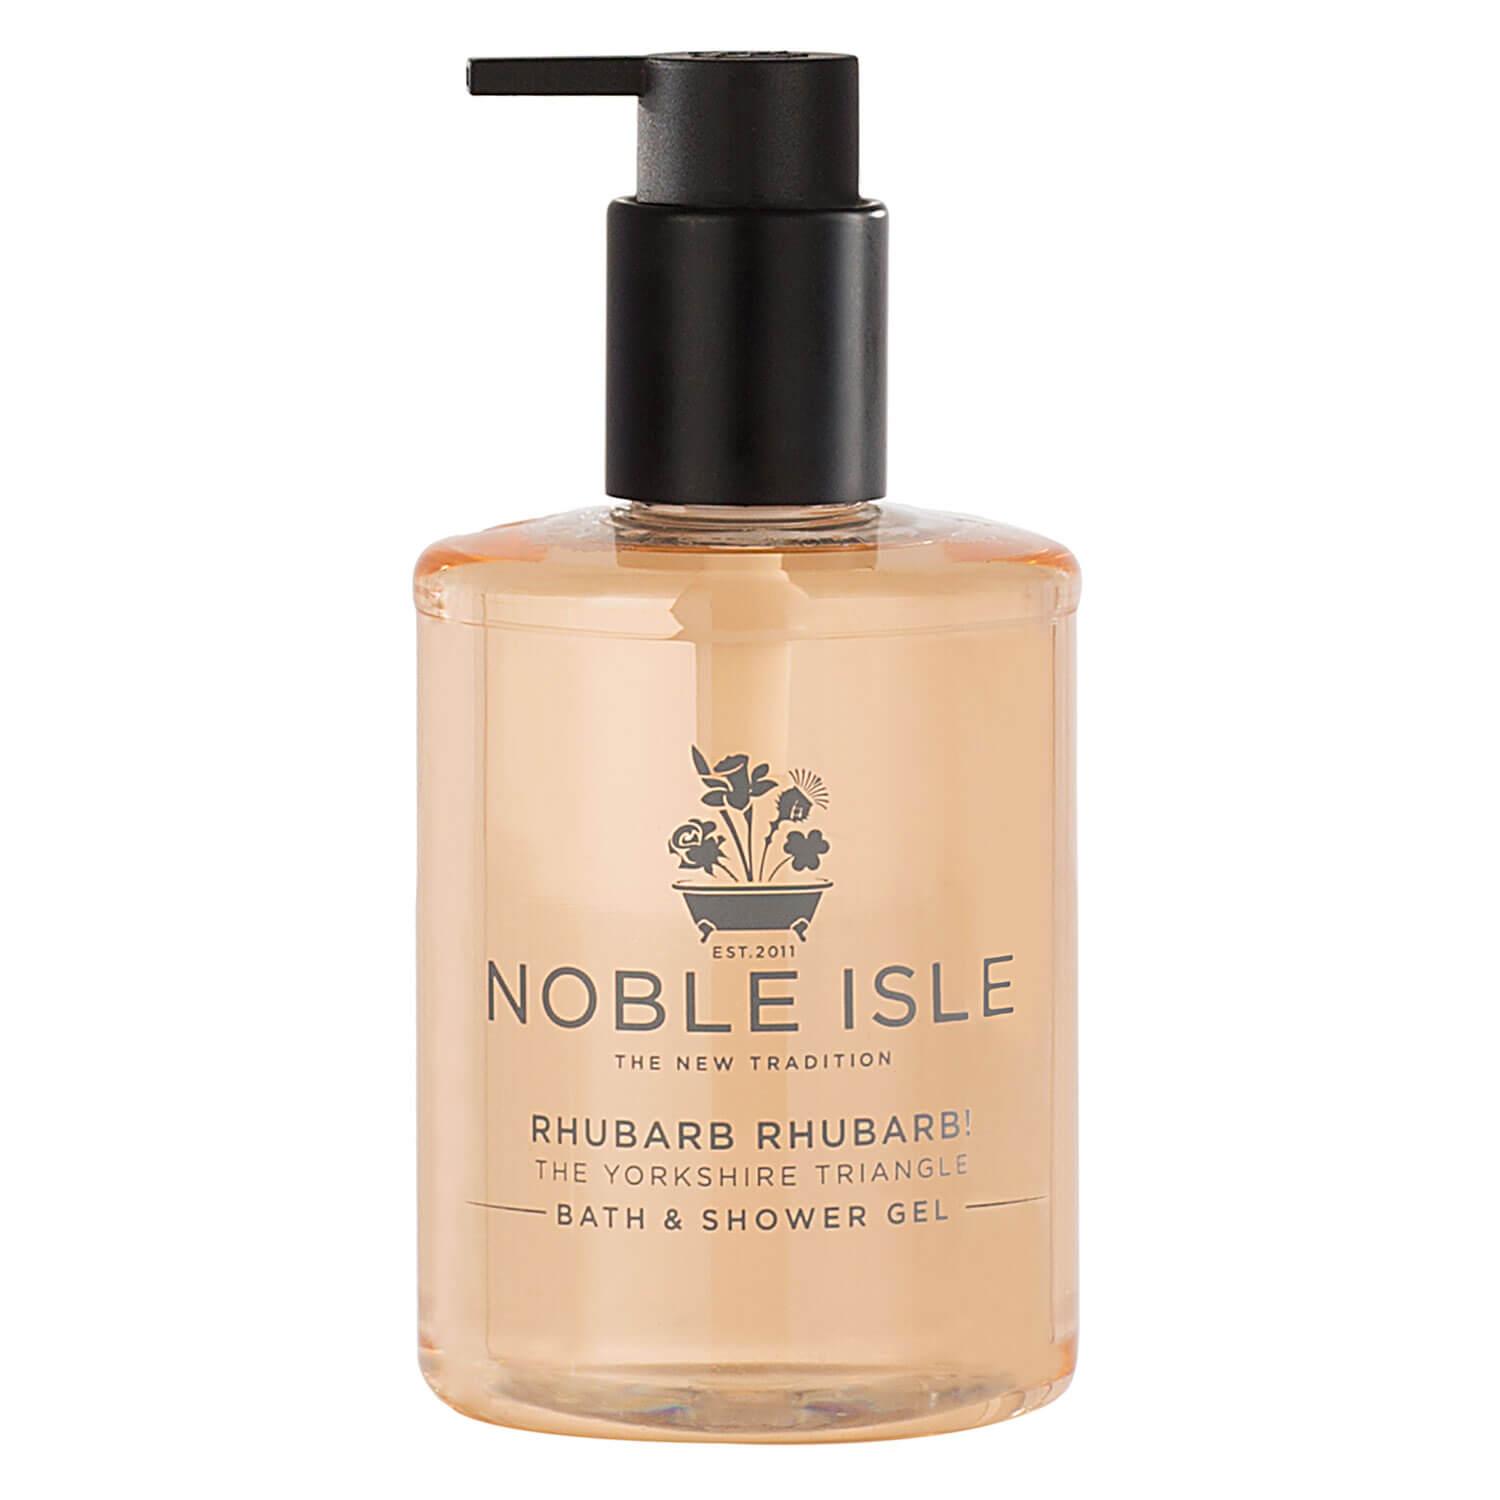 Noble Isle - Rhubarb Rhubarb! Bath & Shower Gel